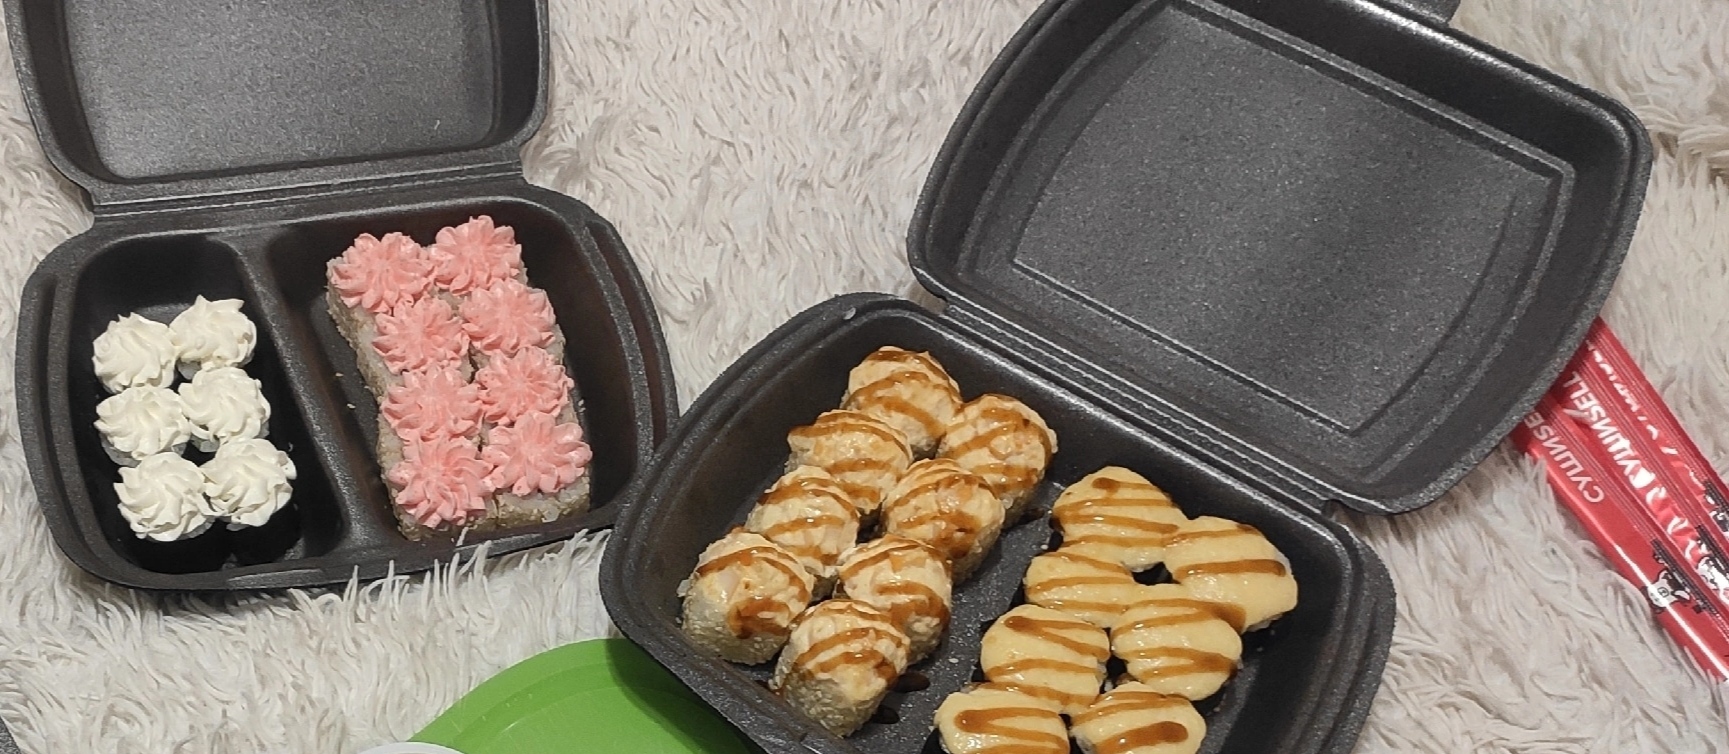 Самые вкусные суши доставка в красноярске отзывы фото 27